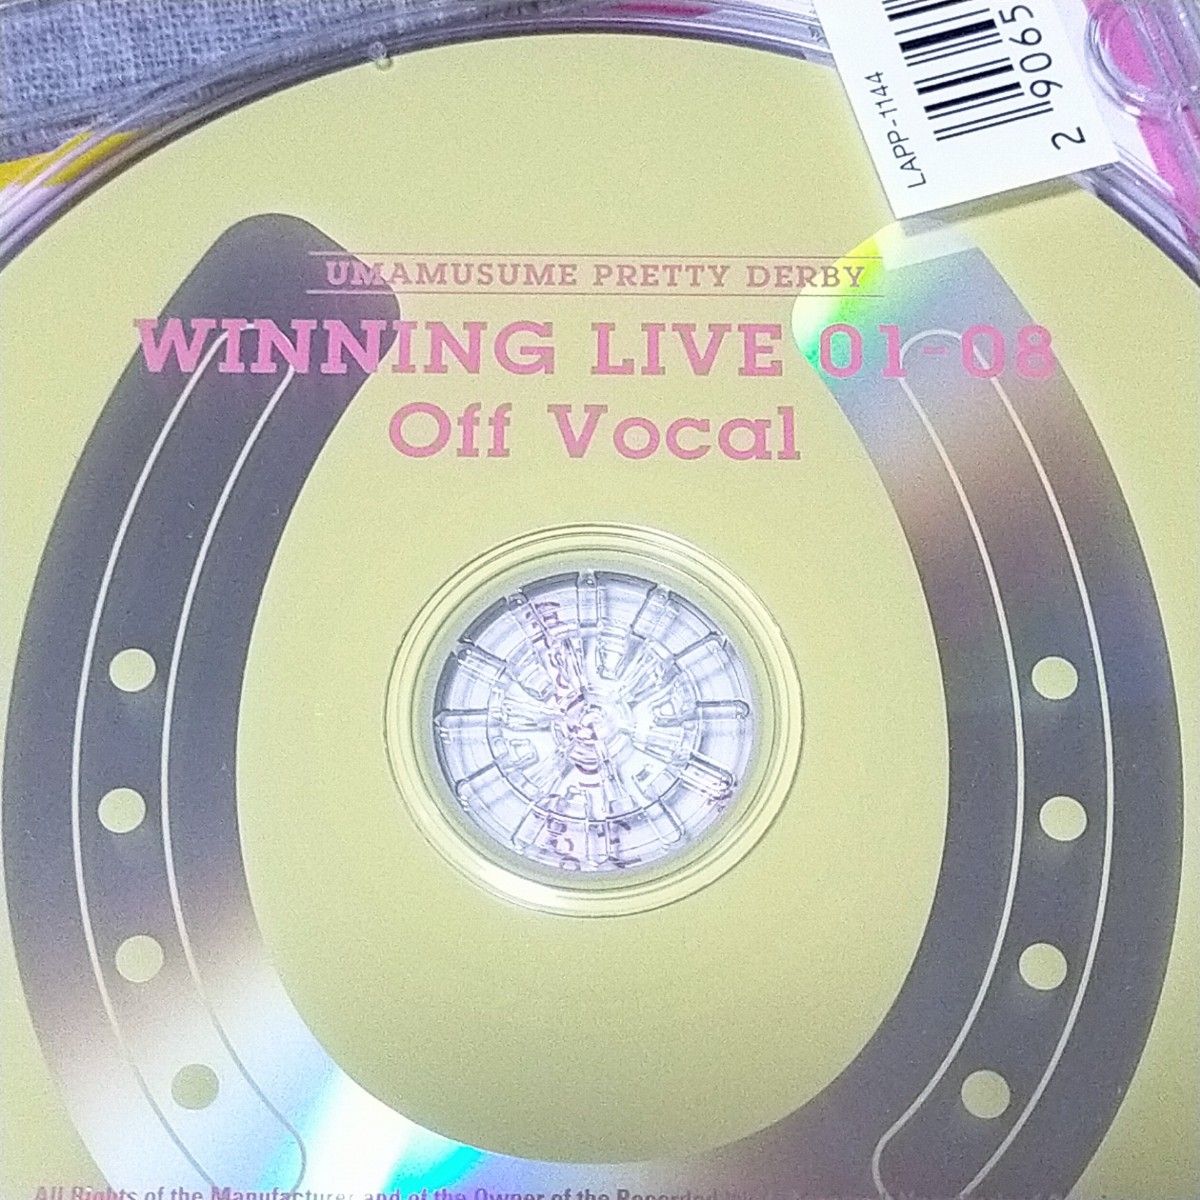 ウマ娘 WINNING LIVE 01-08 Off Vocal★CD OffVocal 02 03 04 05 06 07